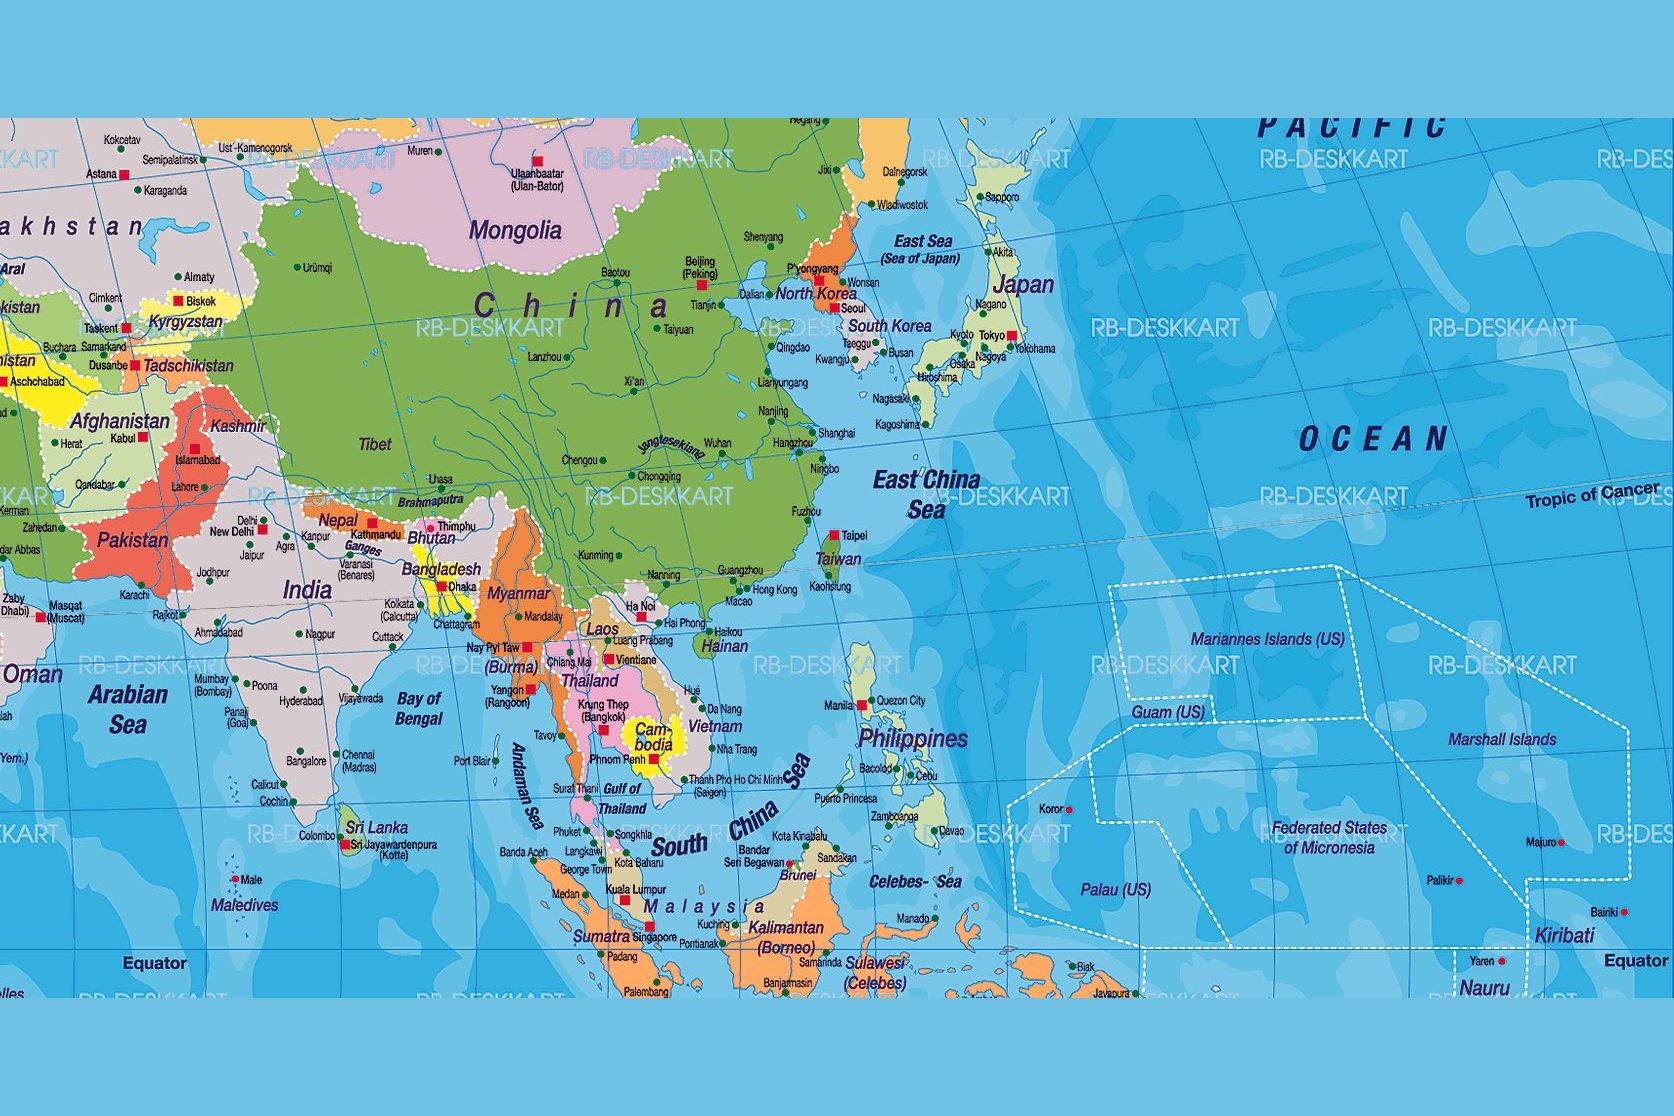 Зарубежная азия со странами. Государства Азии на карте. Карта зарубежной Азии со странами и столицами. Азия государства и столицы на карте. Карта Азии со странами и столицами на русском языке крупно.